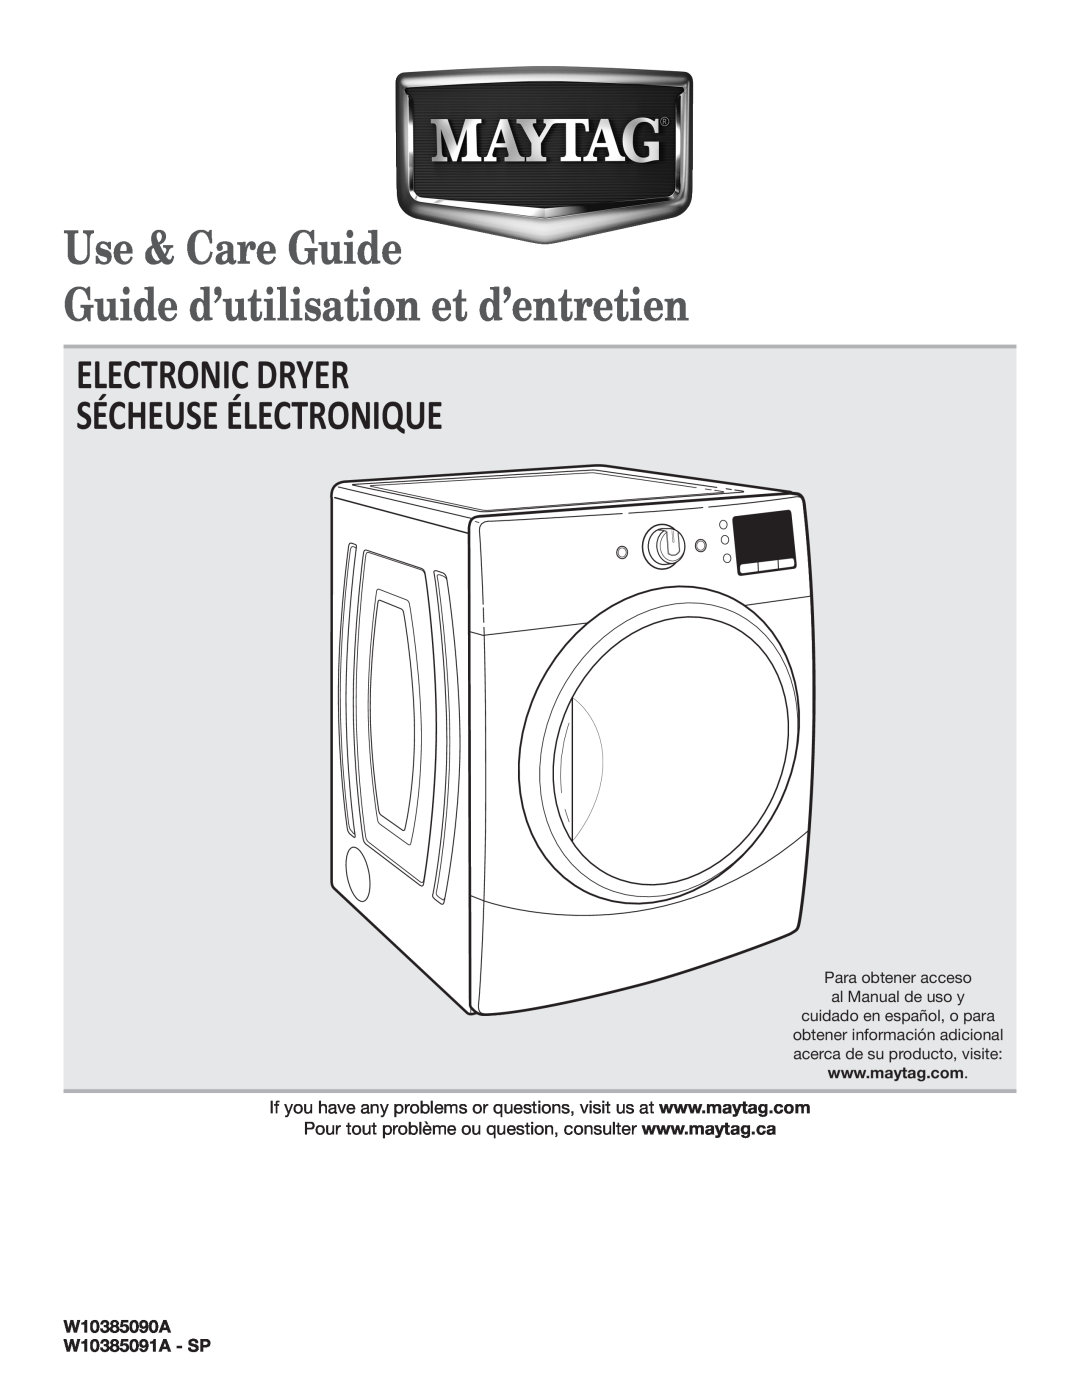 Maytag W10385091A - SP manual Use & Care Guide Guide d’utilisation et d’entretien, Electronic Dryer Sécheuse Électronique 